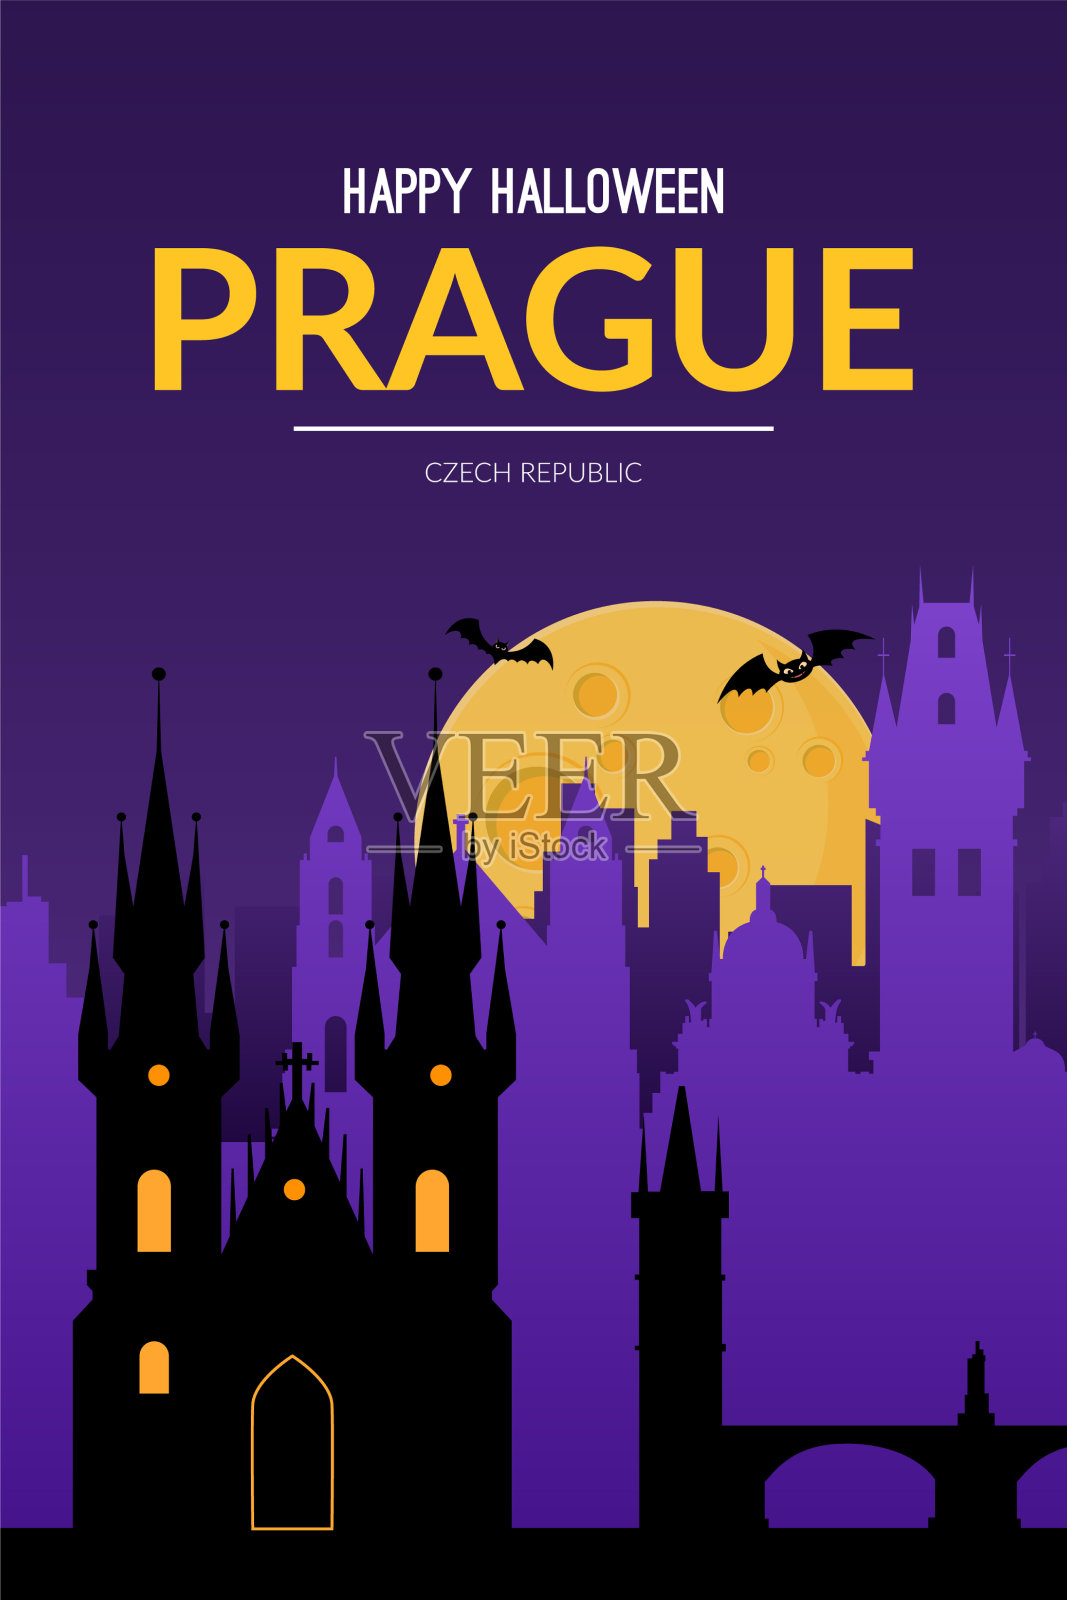 捷克共和国布拉格万圣节背景设计模板素材